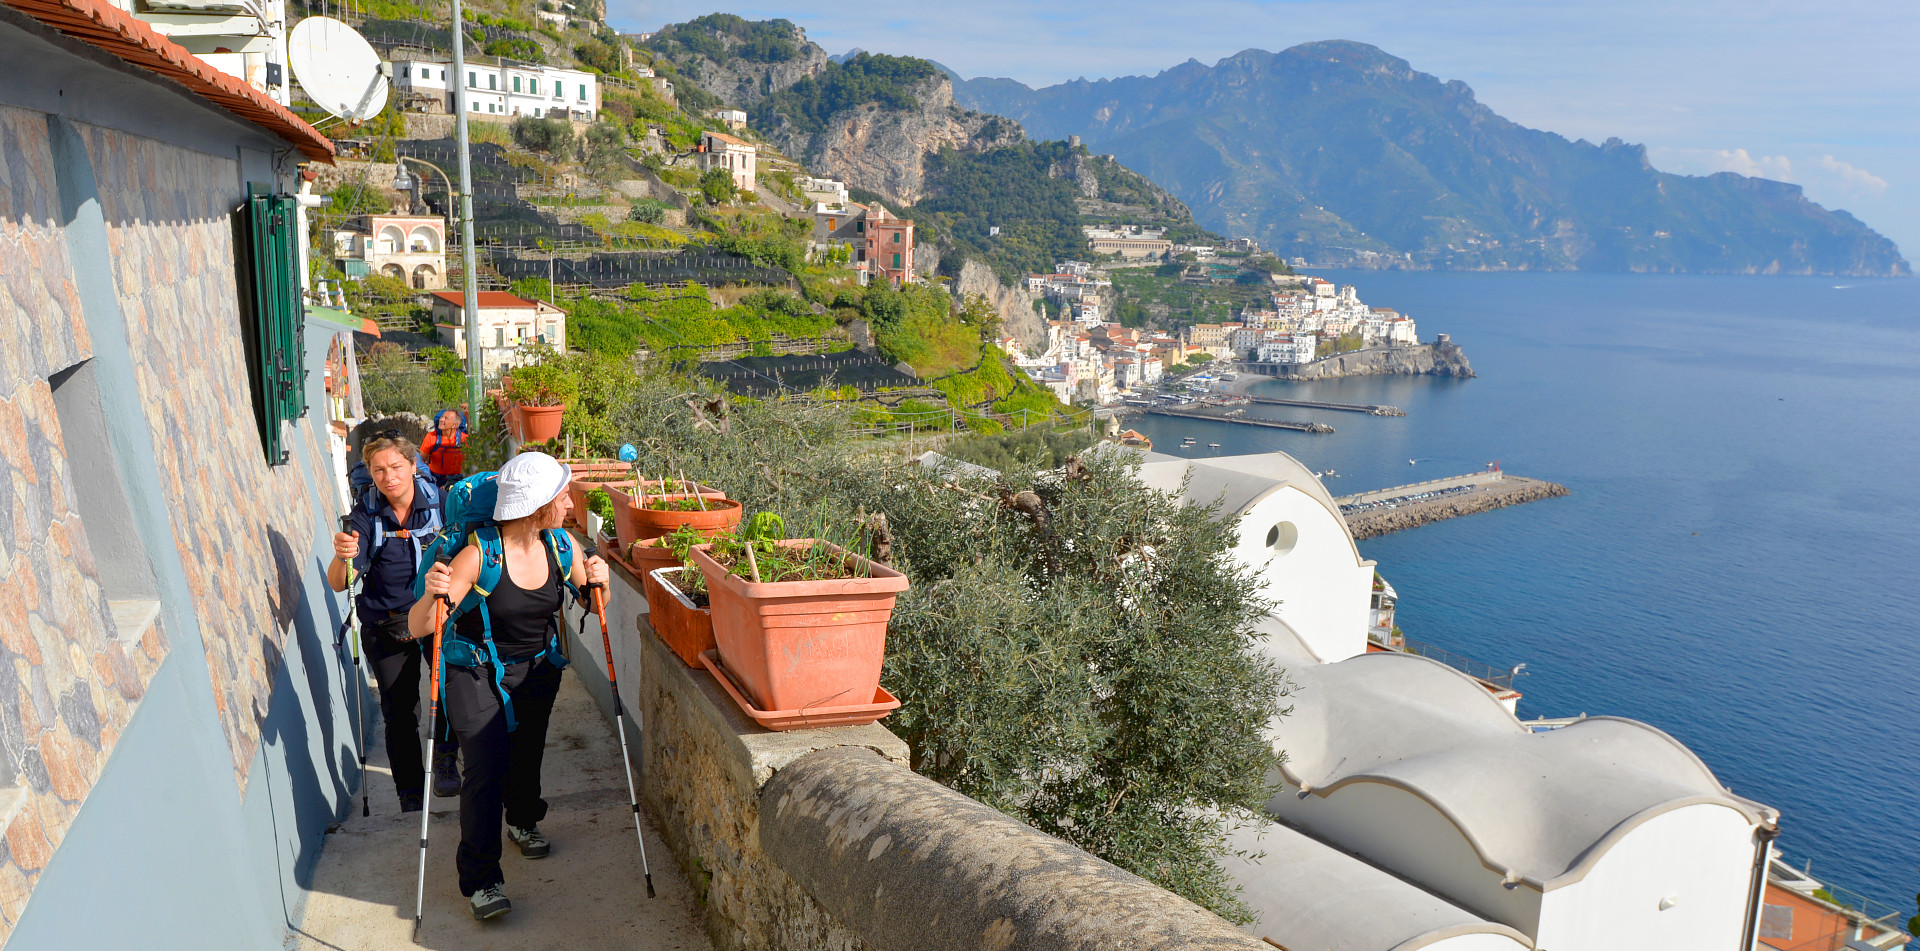 Hike the entire Amalfi Coast